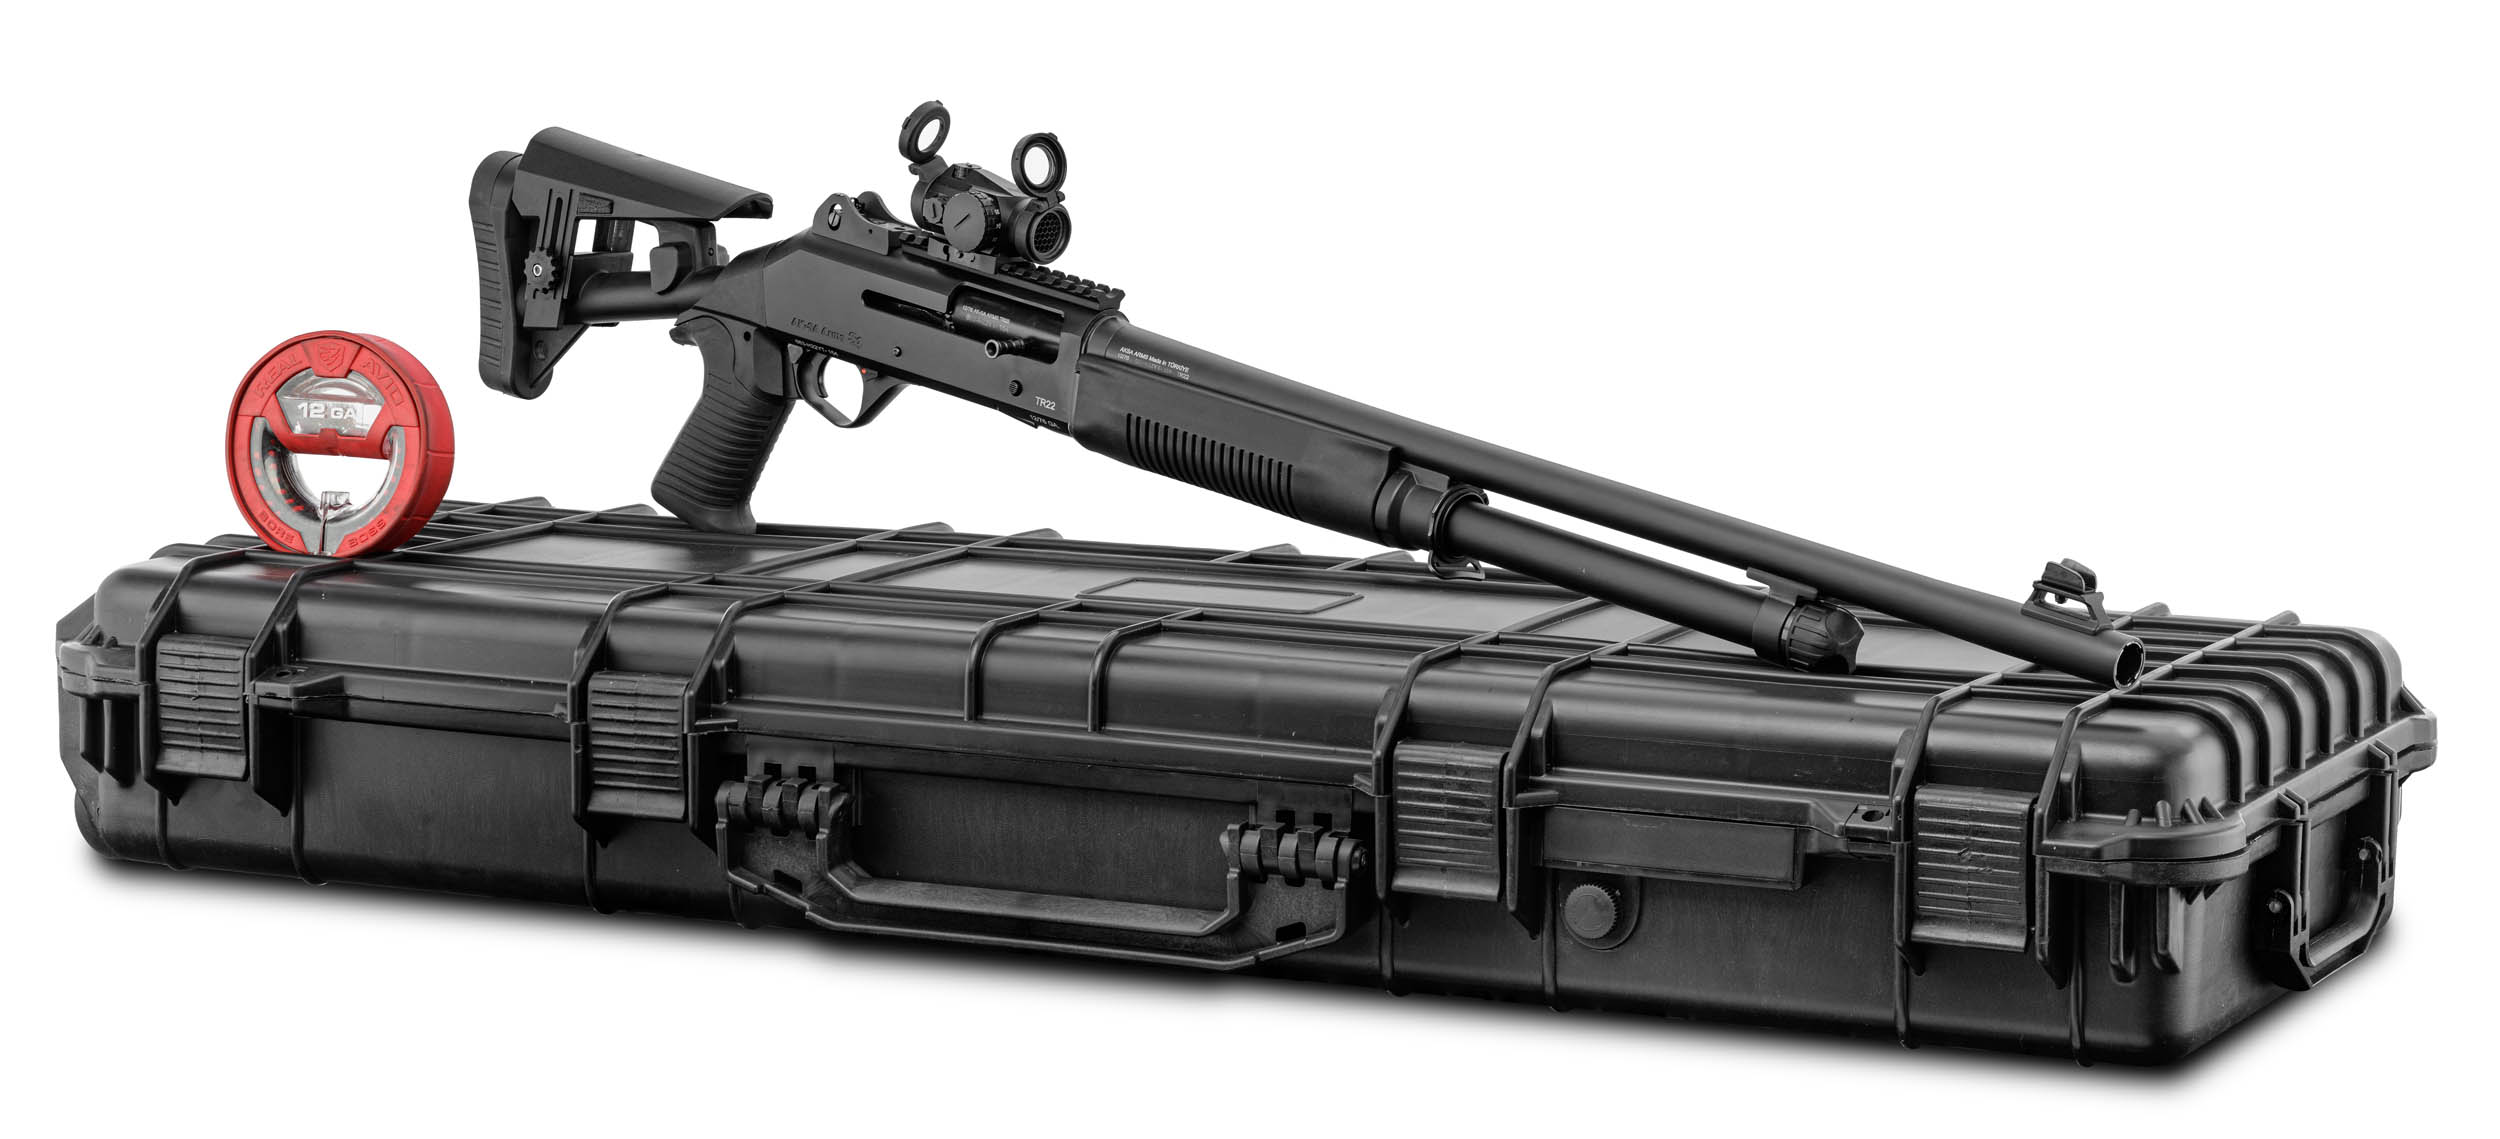 Support en matière plastique pour cible fusil carabine 50 m avec